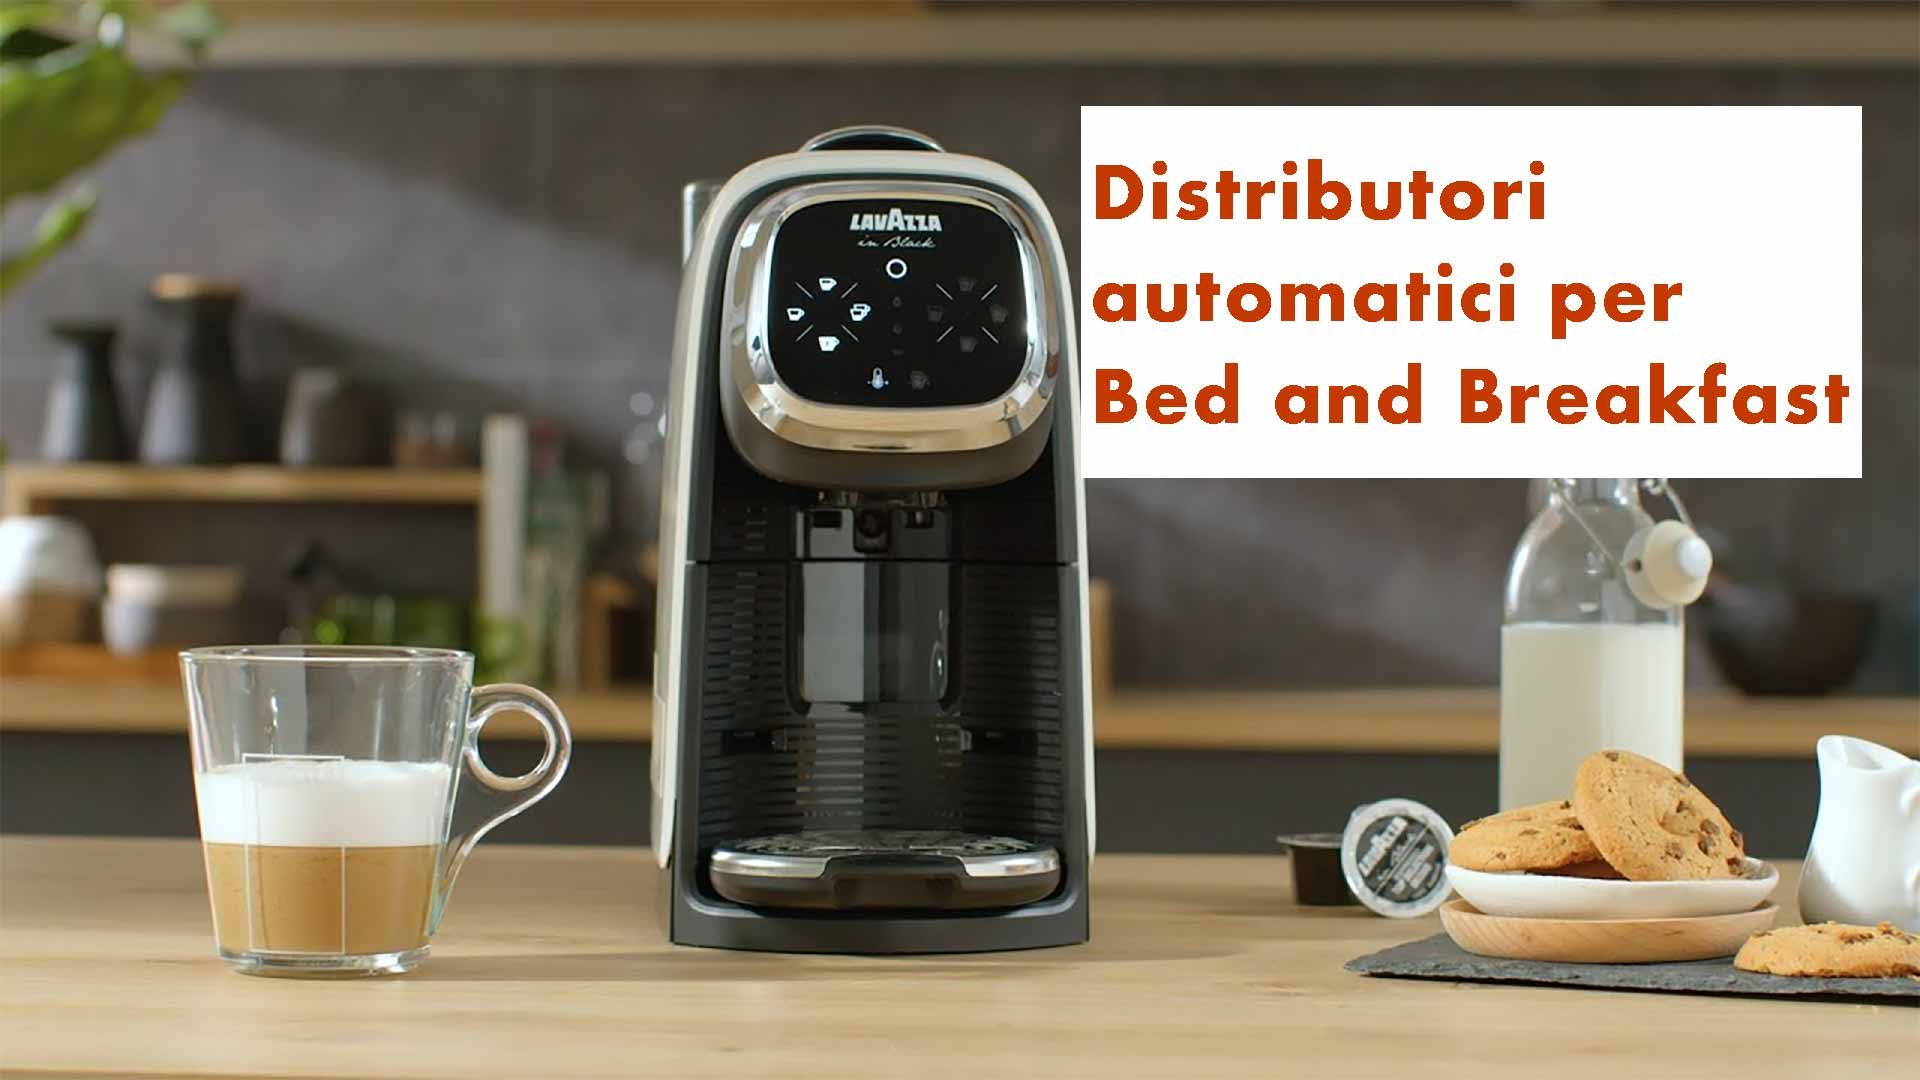 Distributori automatici per Bed and Breakfast